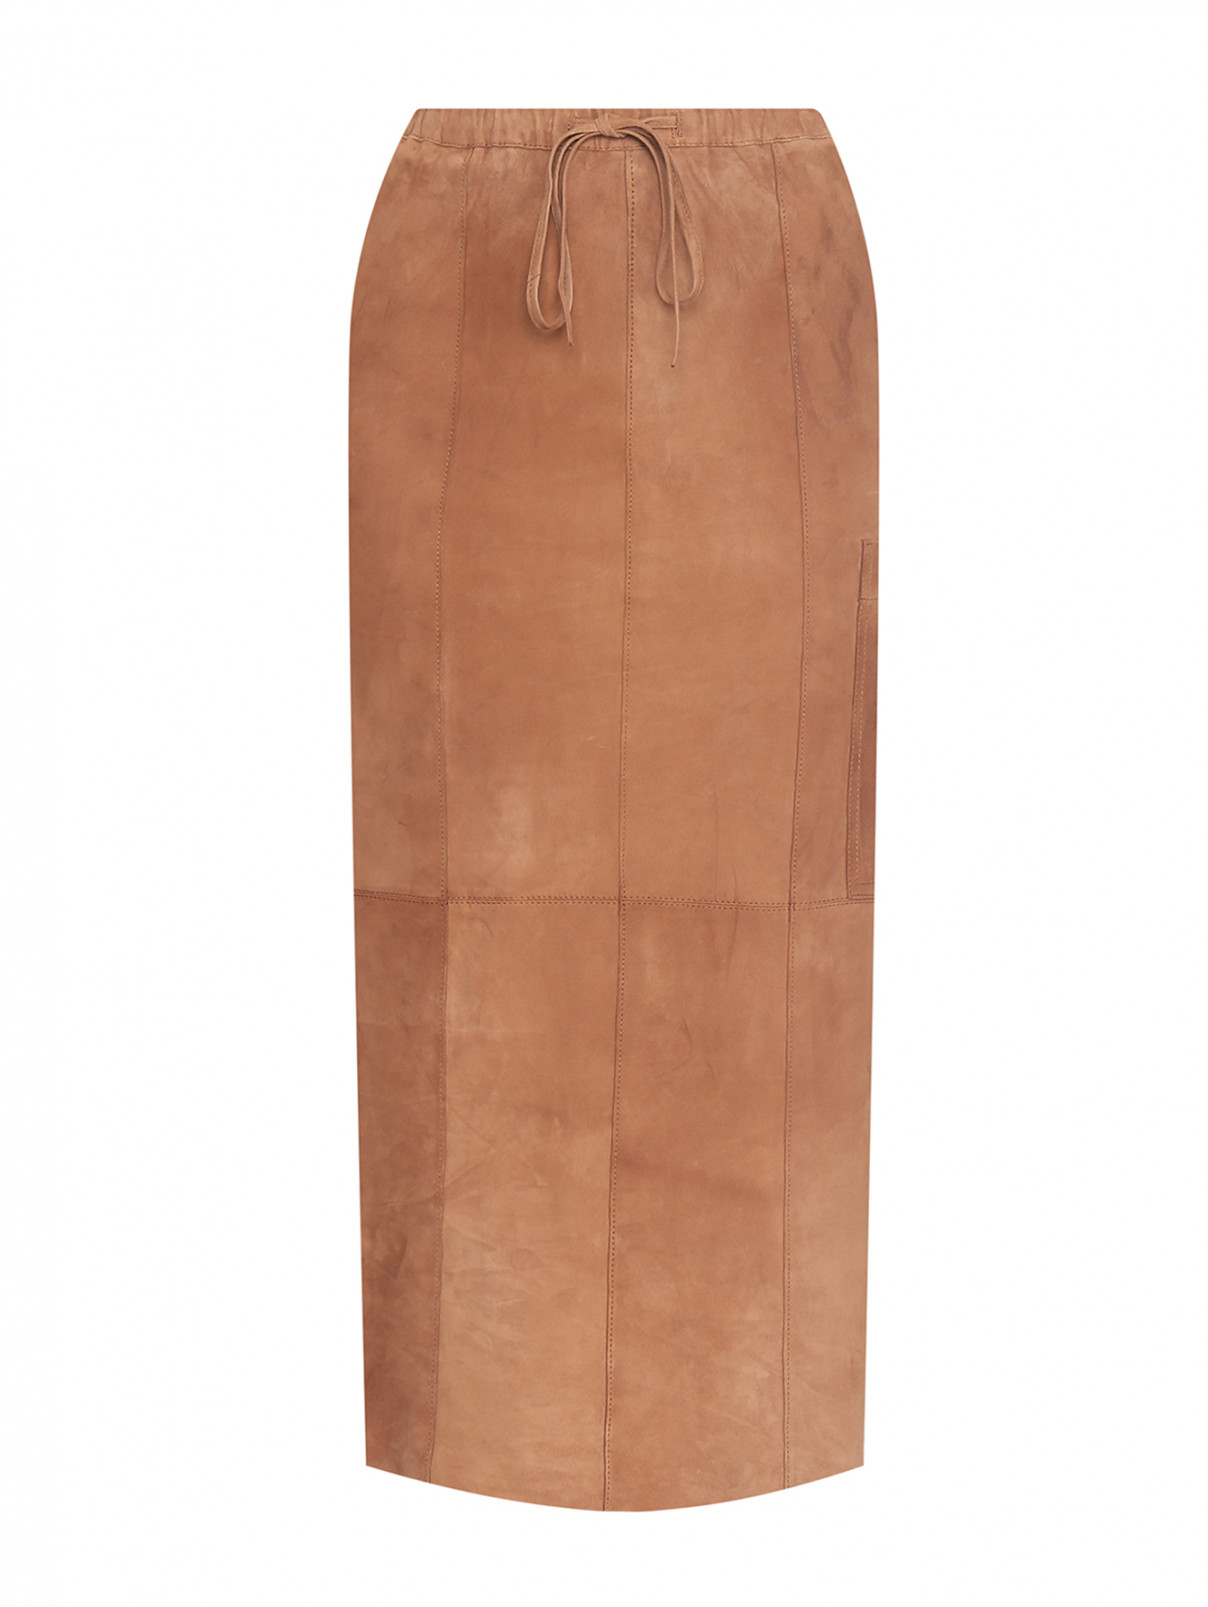 Юбка-миди из замши с карманами Alysi  –  Общий вид  – Цвет:  Коричневый